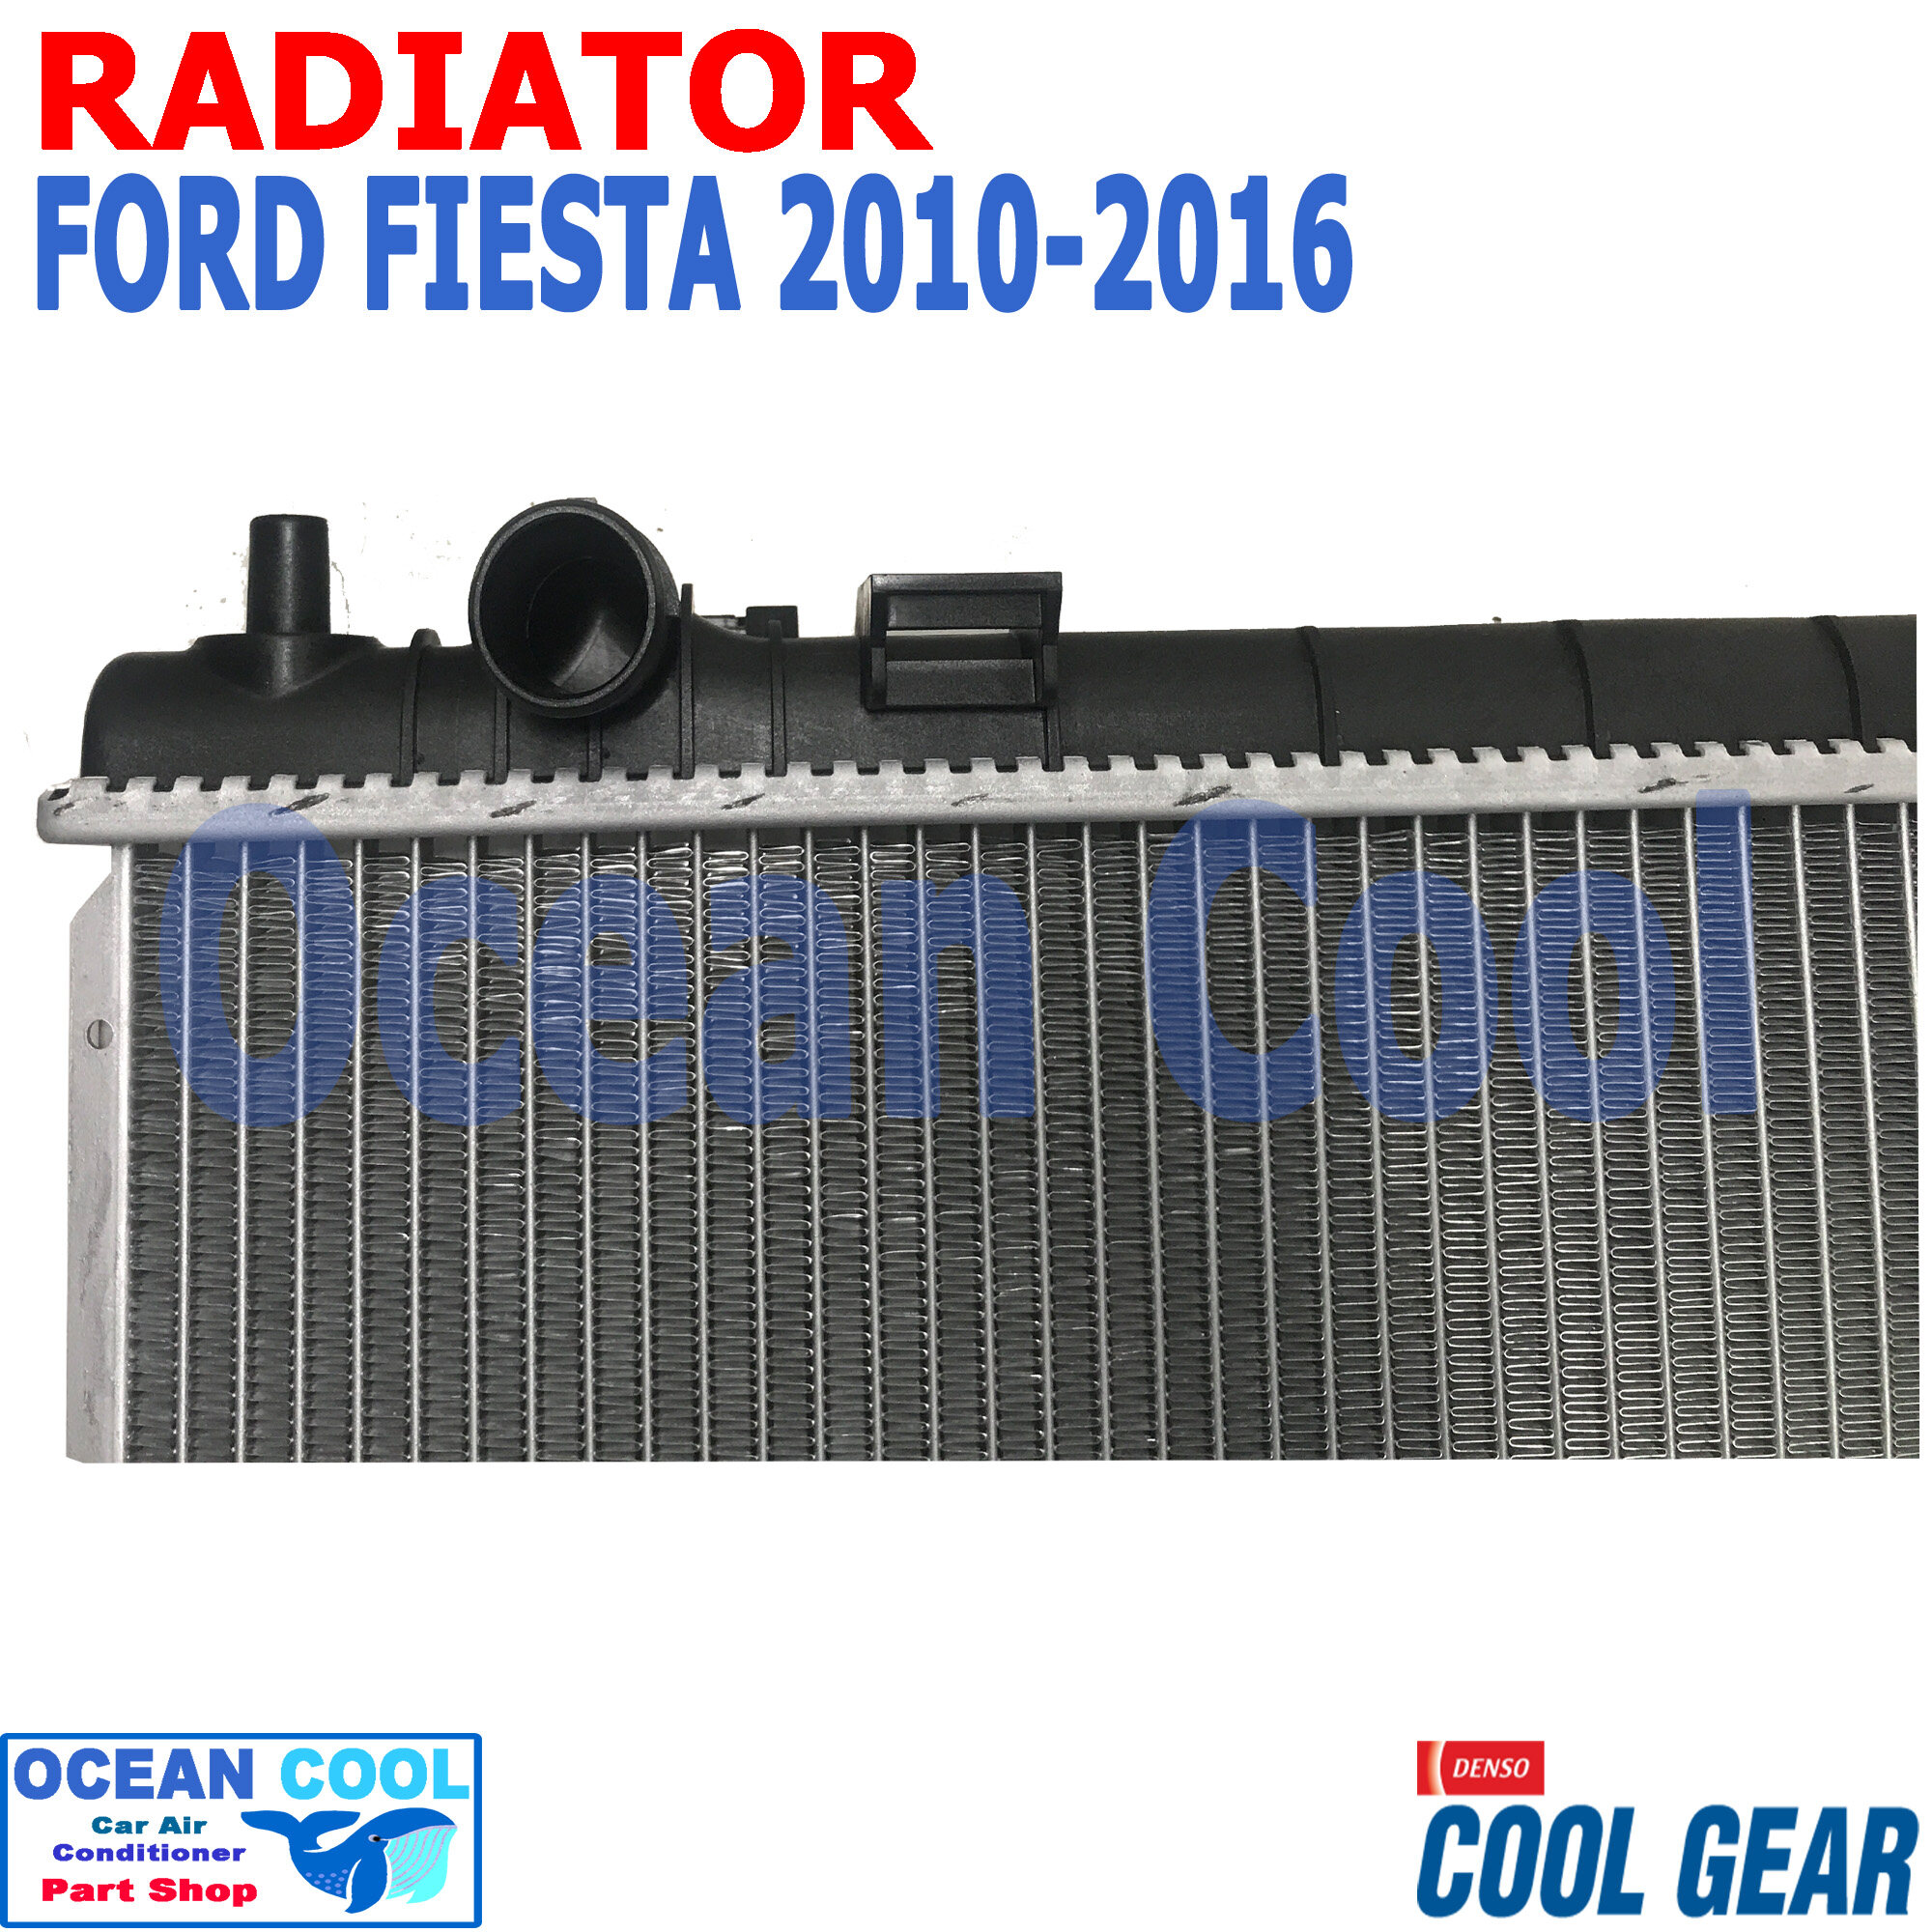 หม้อน้ำ ฟอร์ด เฟียสต้า ปี 2010 - 2016 เครื่อง 1.5 1.6 cc ออโต้ RD0047 Cool  Gear แท้ รหัส 422176-2360 RADIATOR FORD FIESTA AUTO อะไหล่ รถยนต์ |  Lazada.co.th